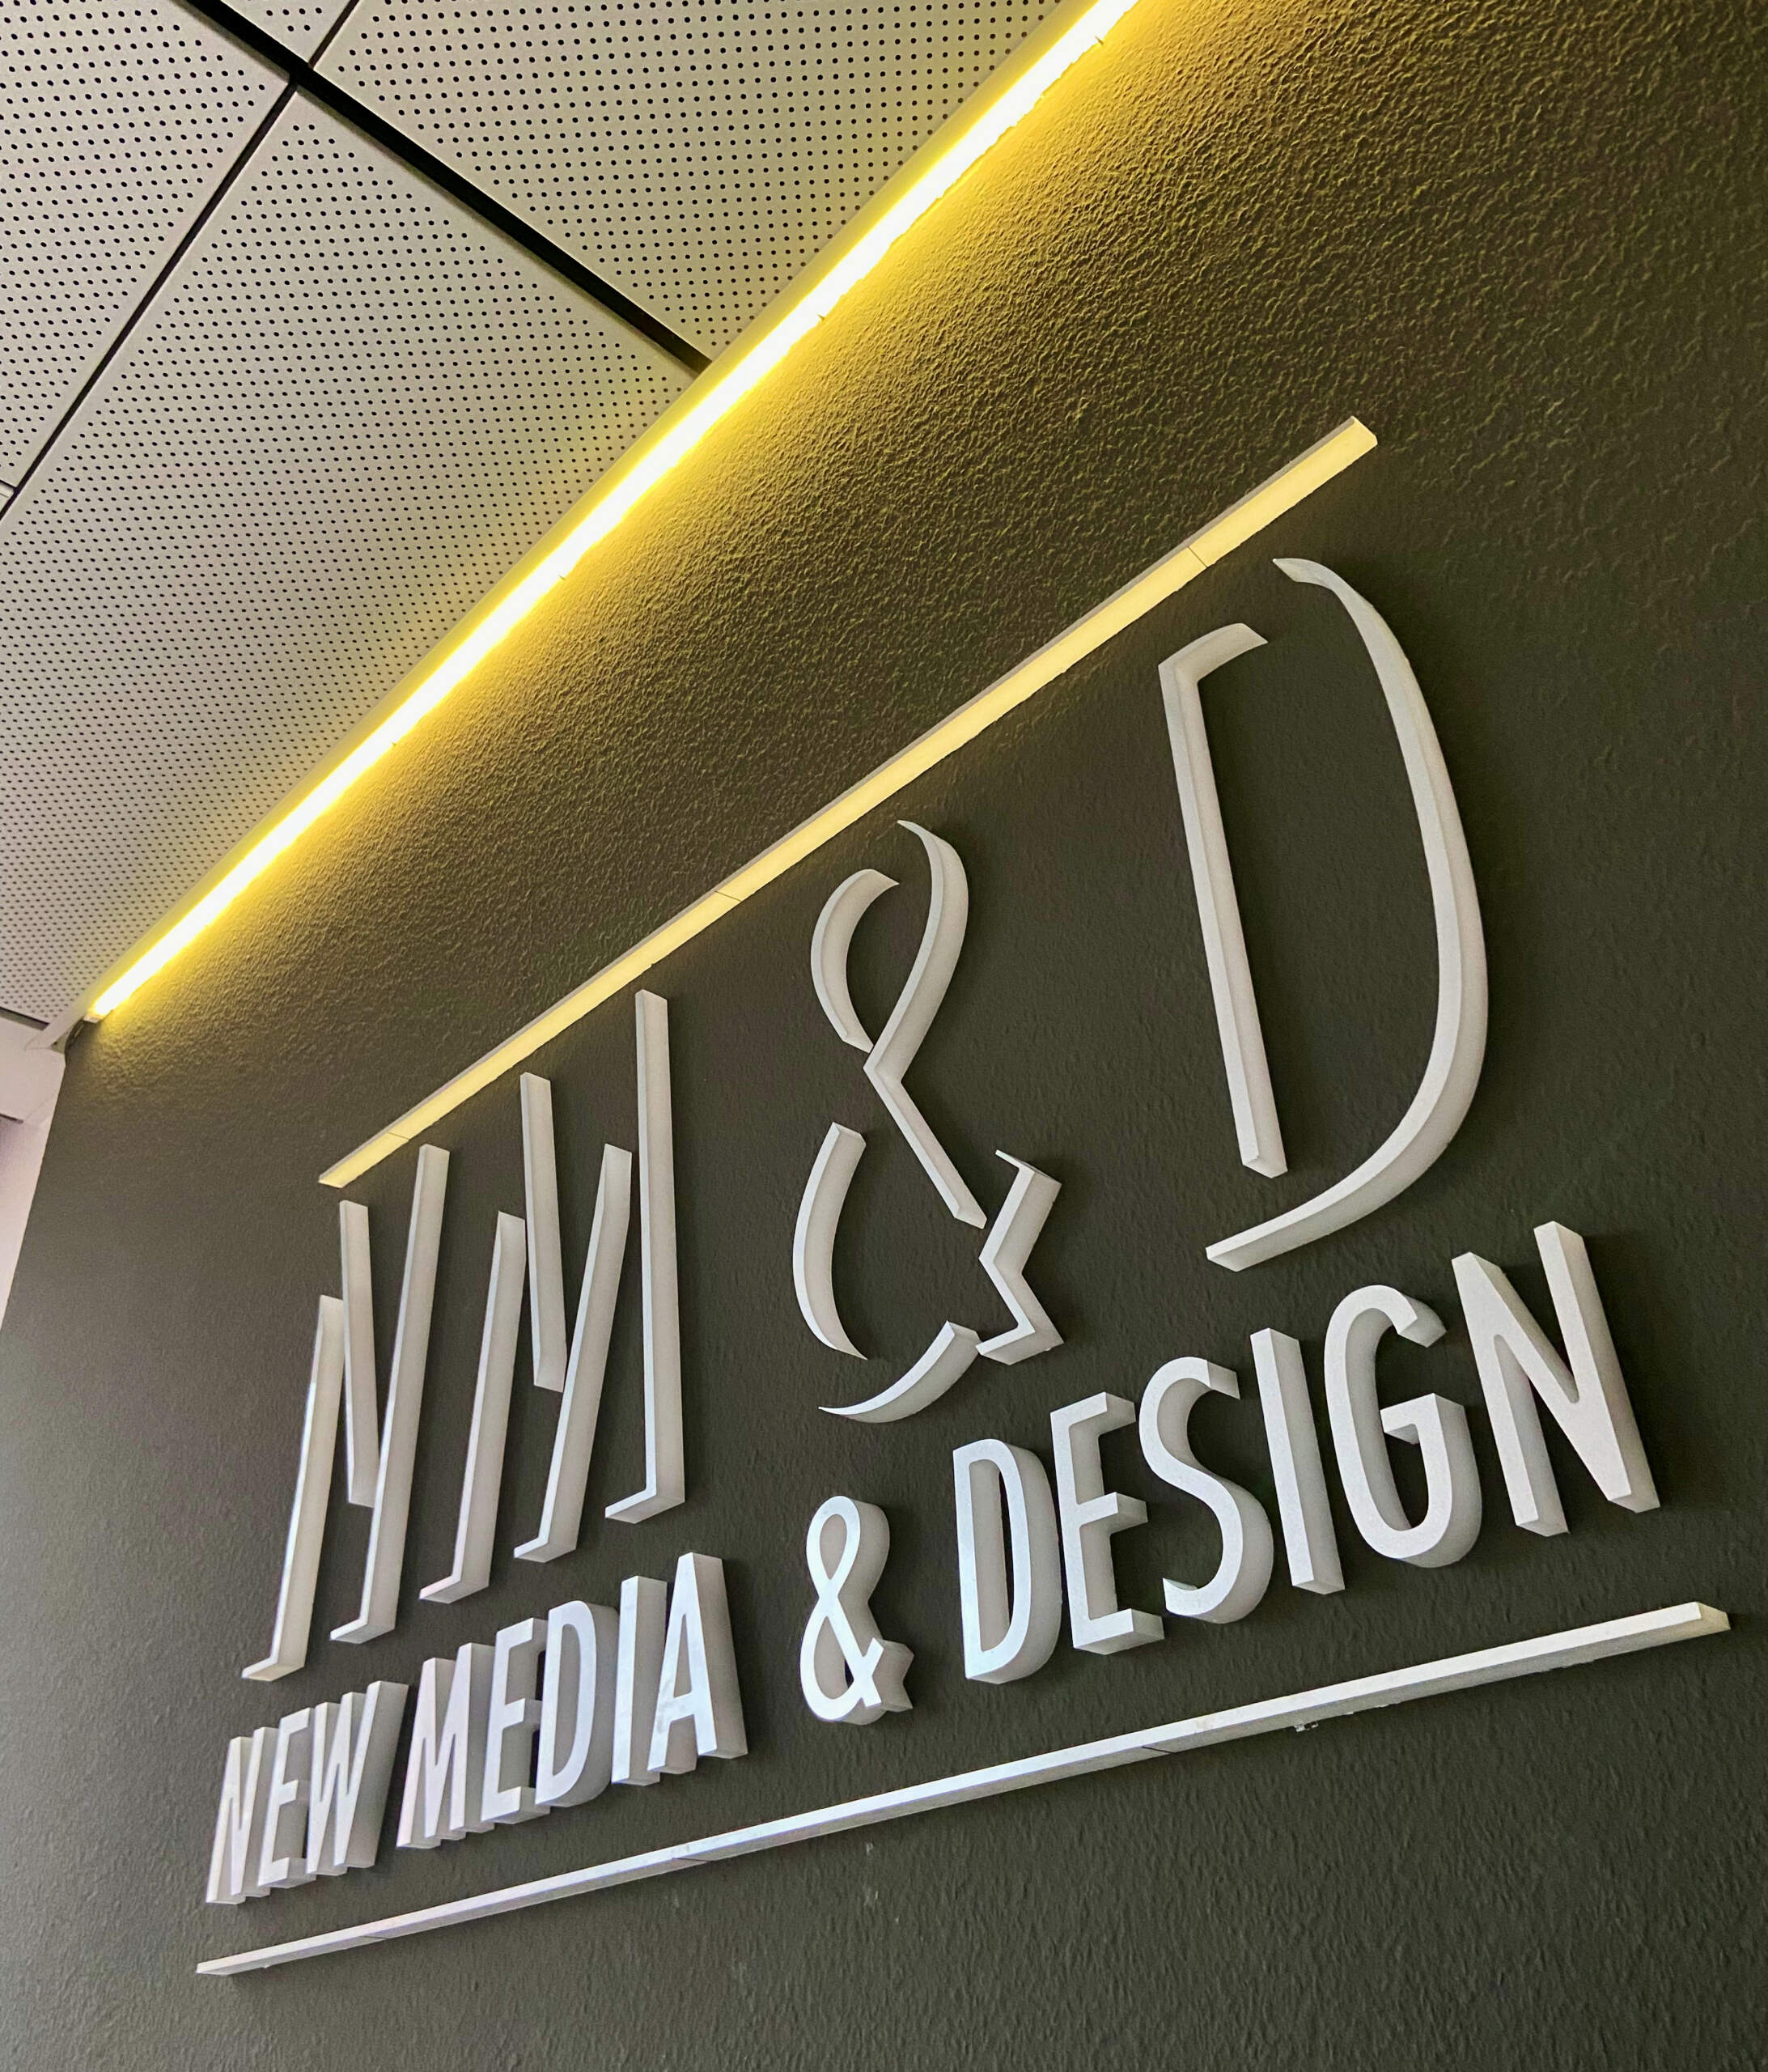 New Media & Design Stäfa